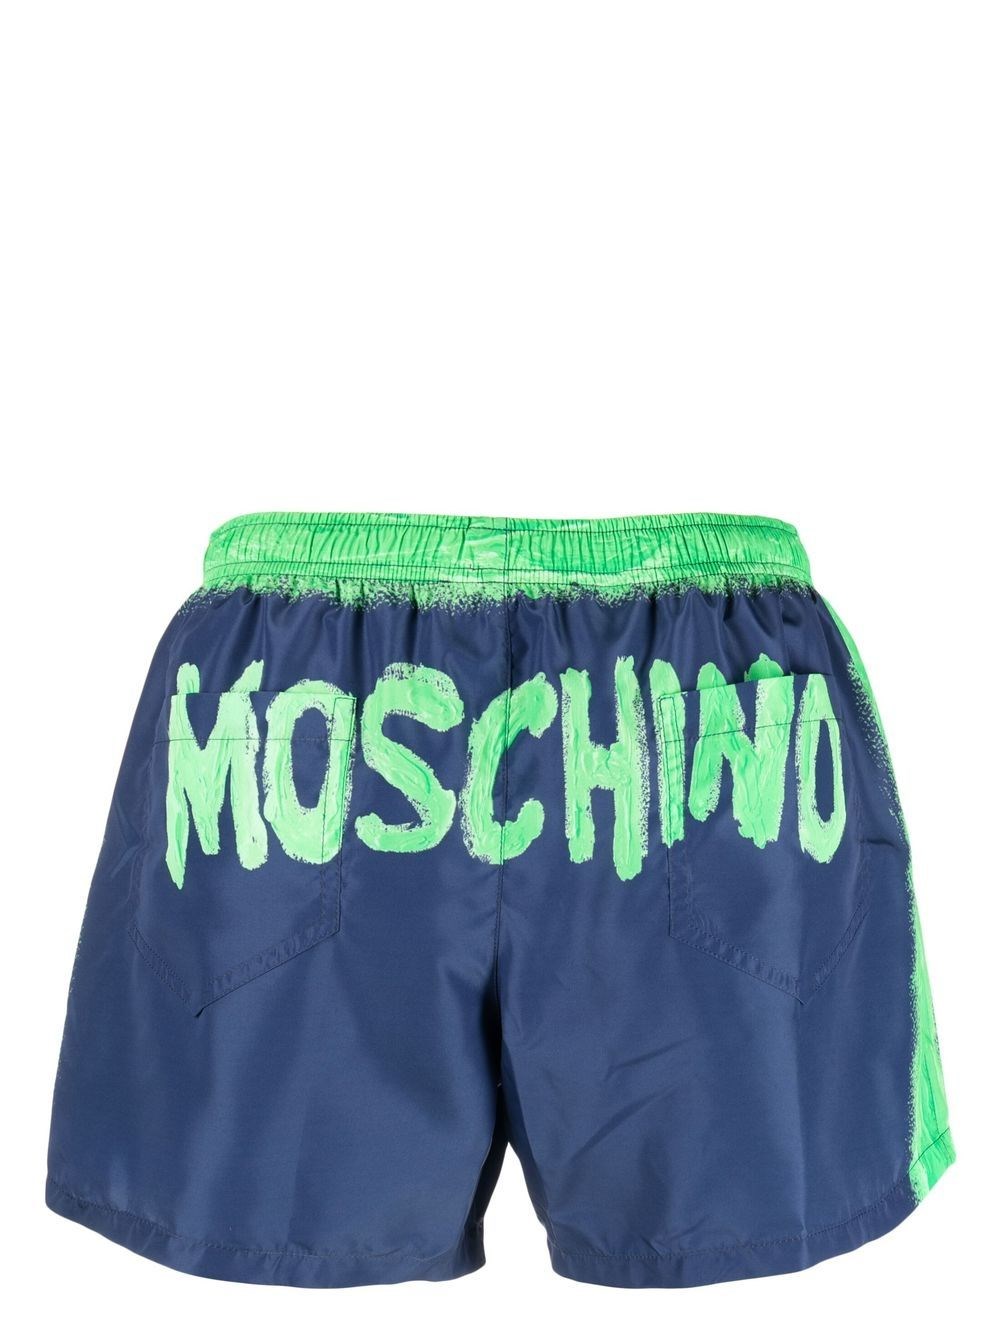 Moschino Paint swim trunks